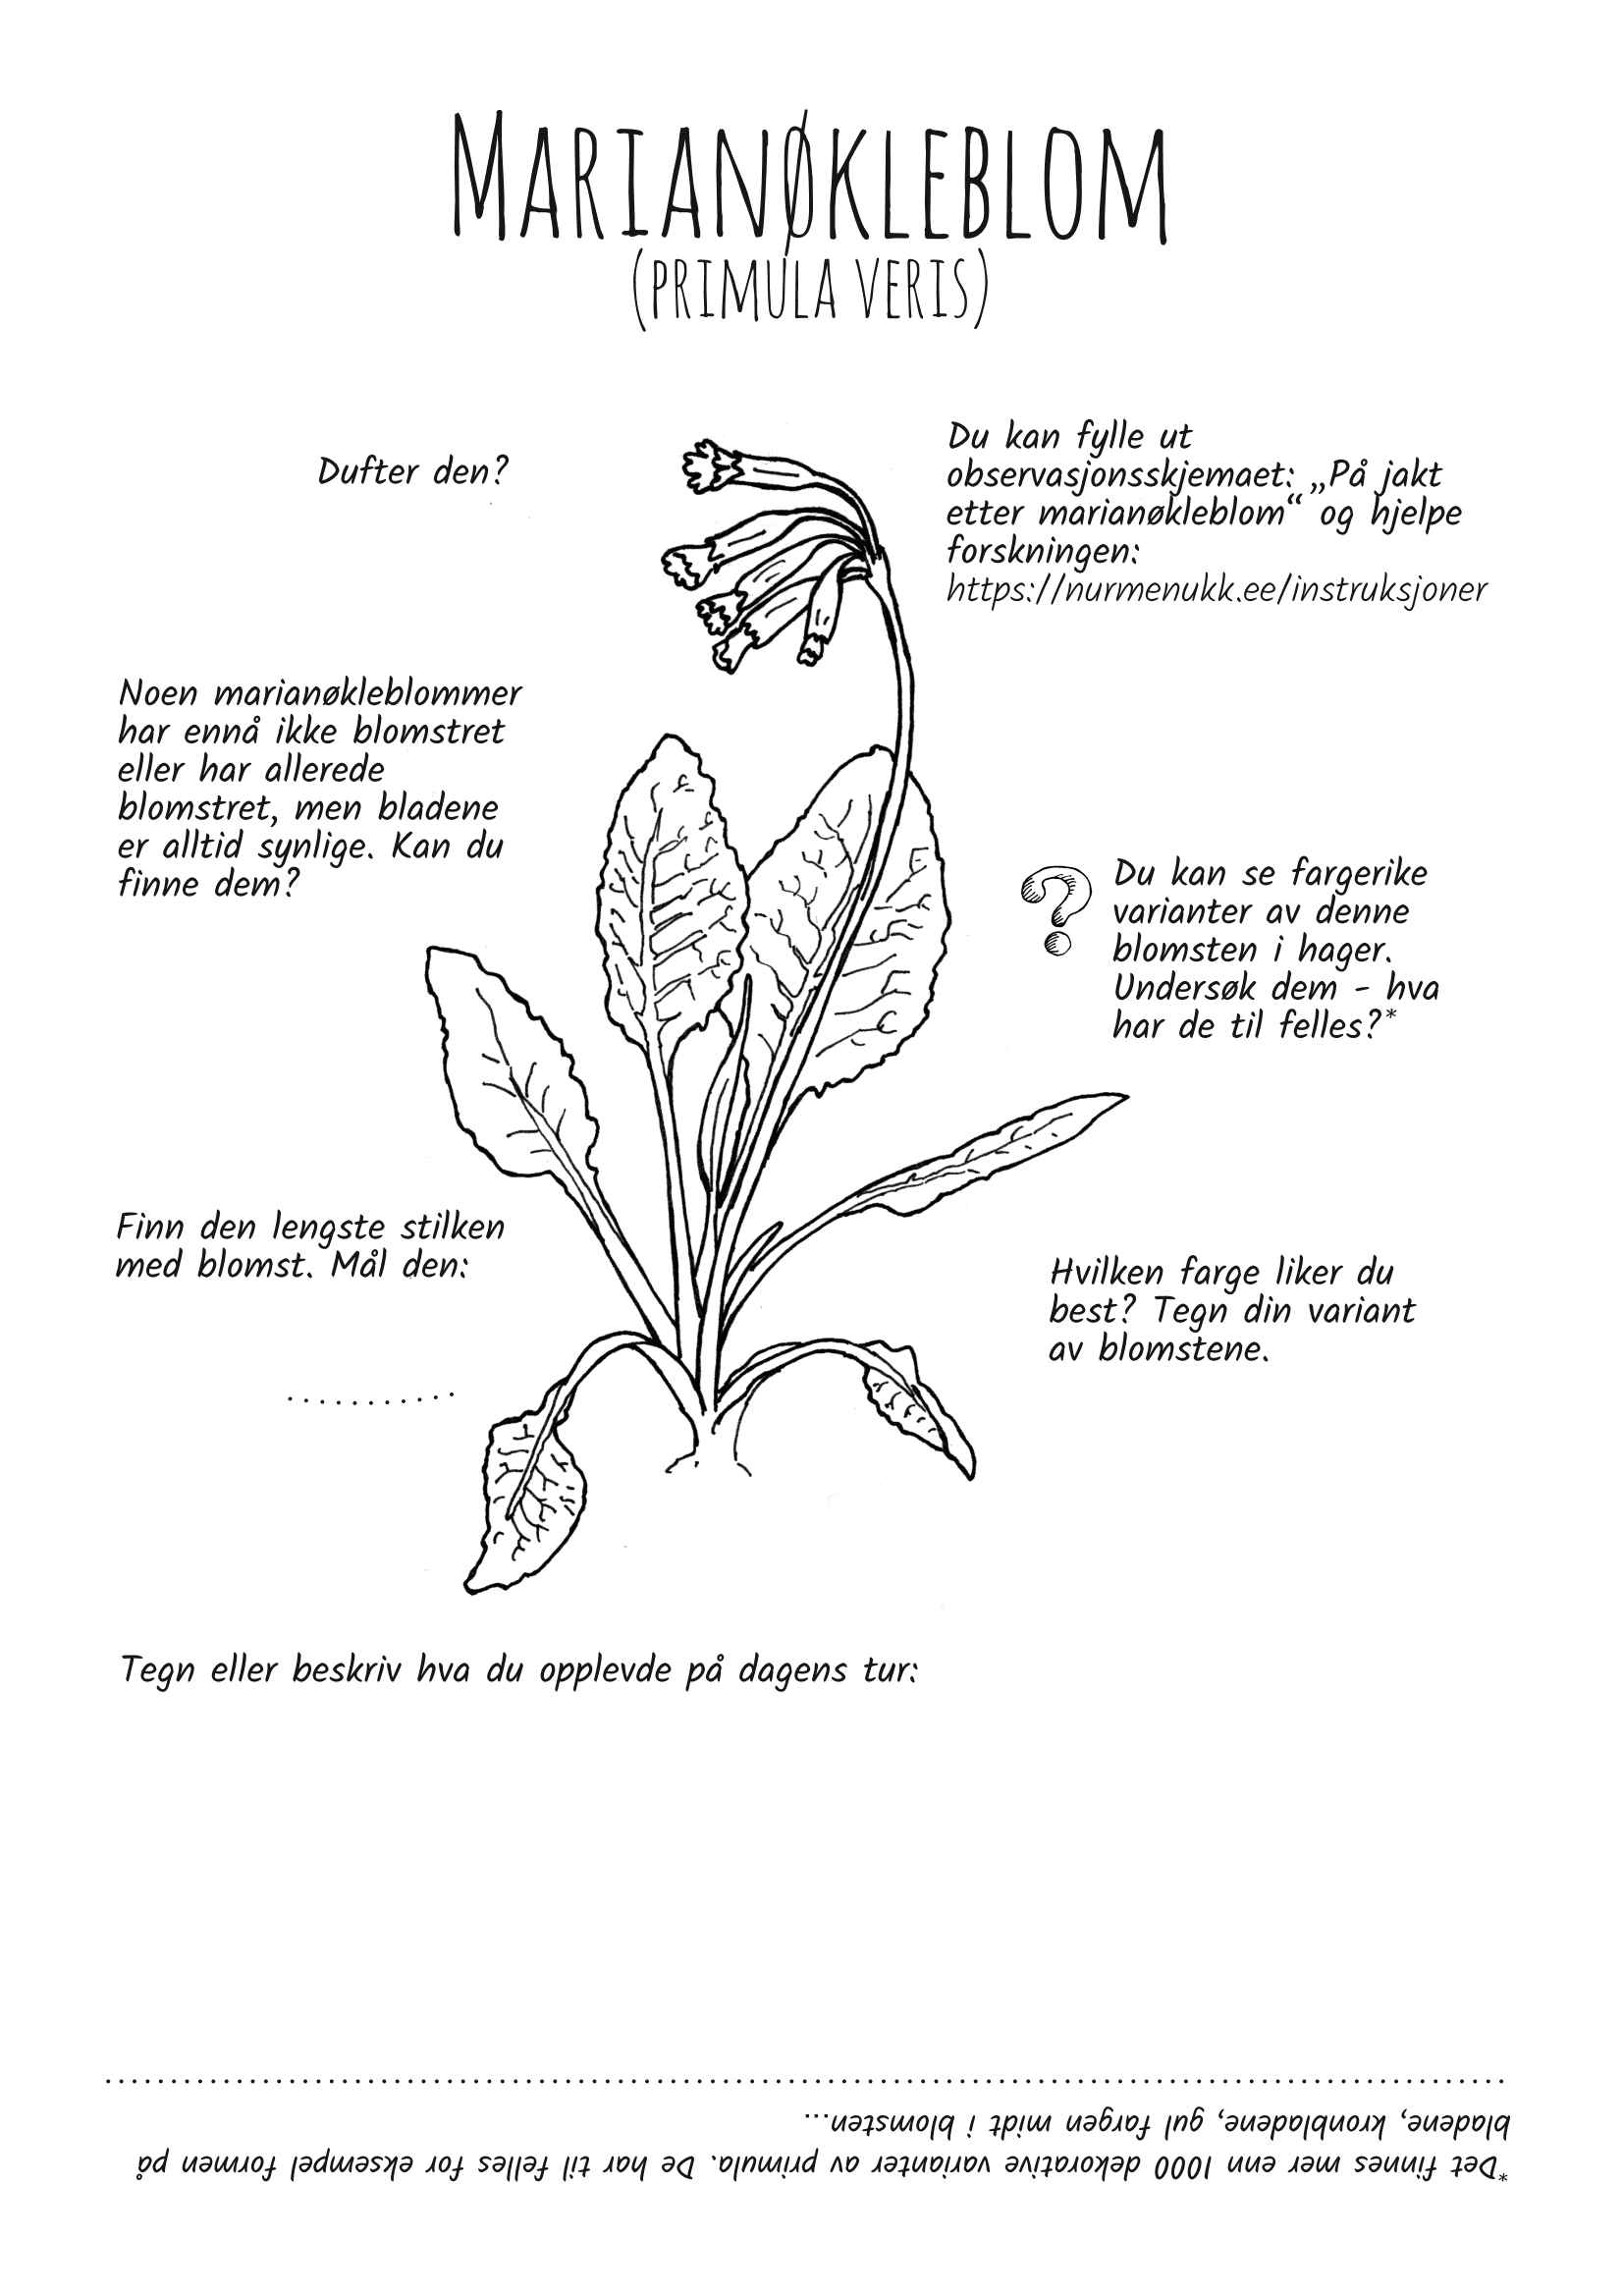 Utforsk planter: marianøkleblom